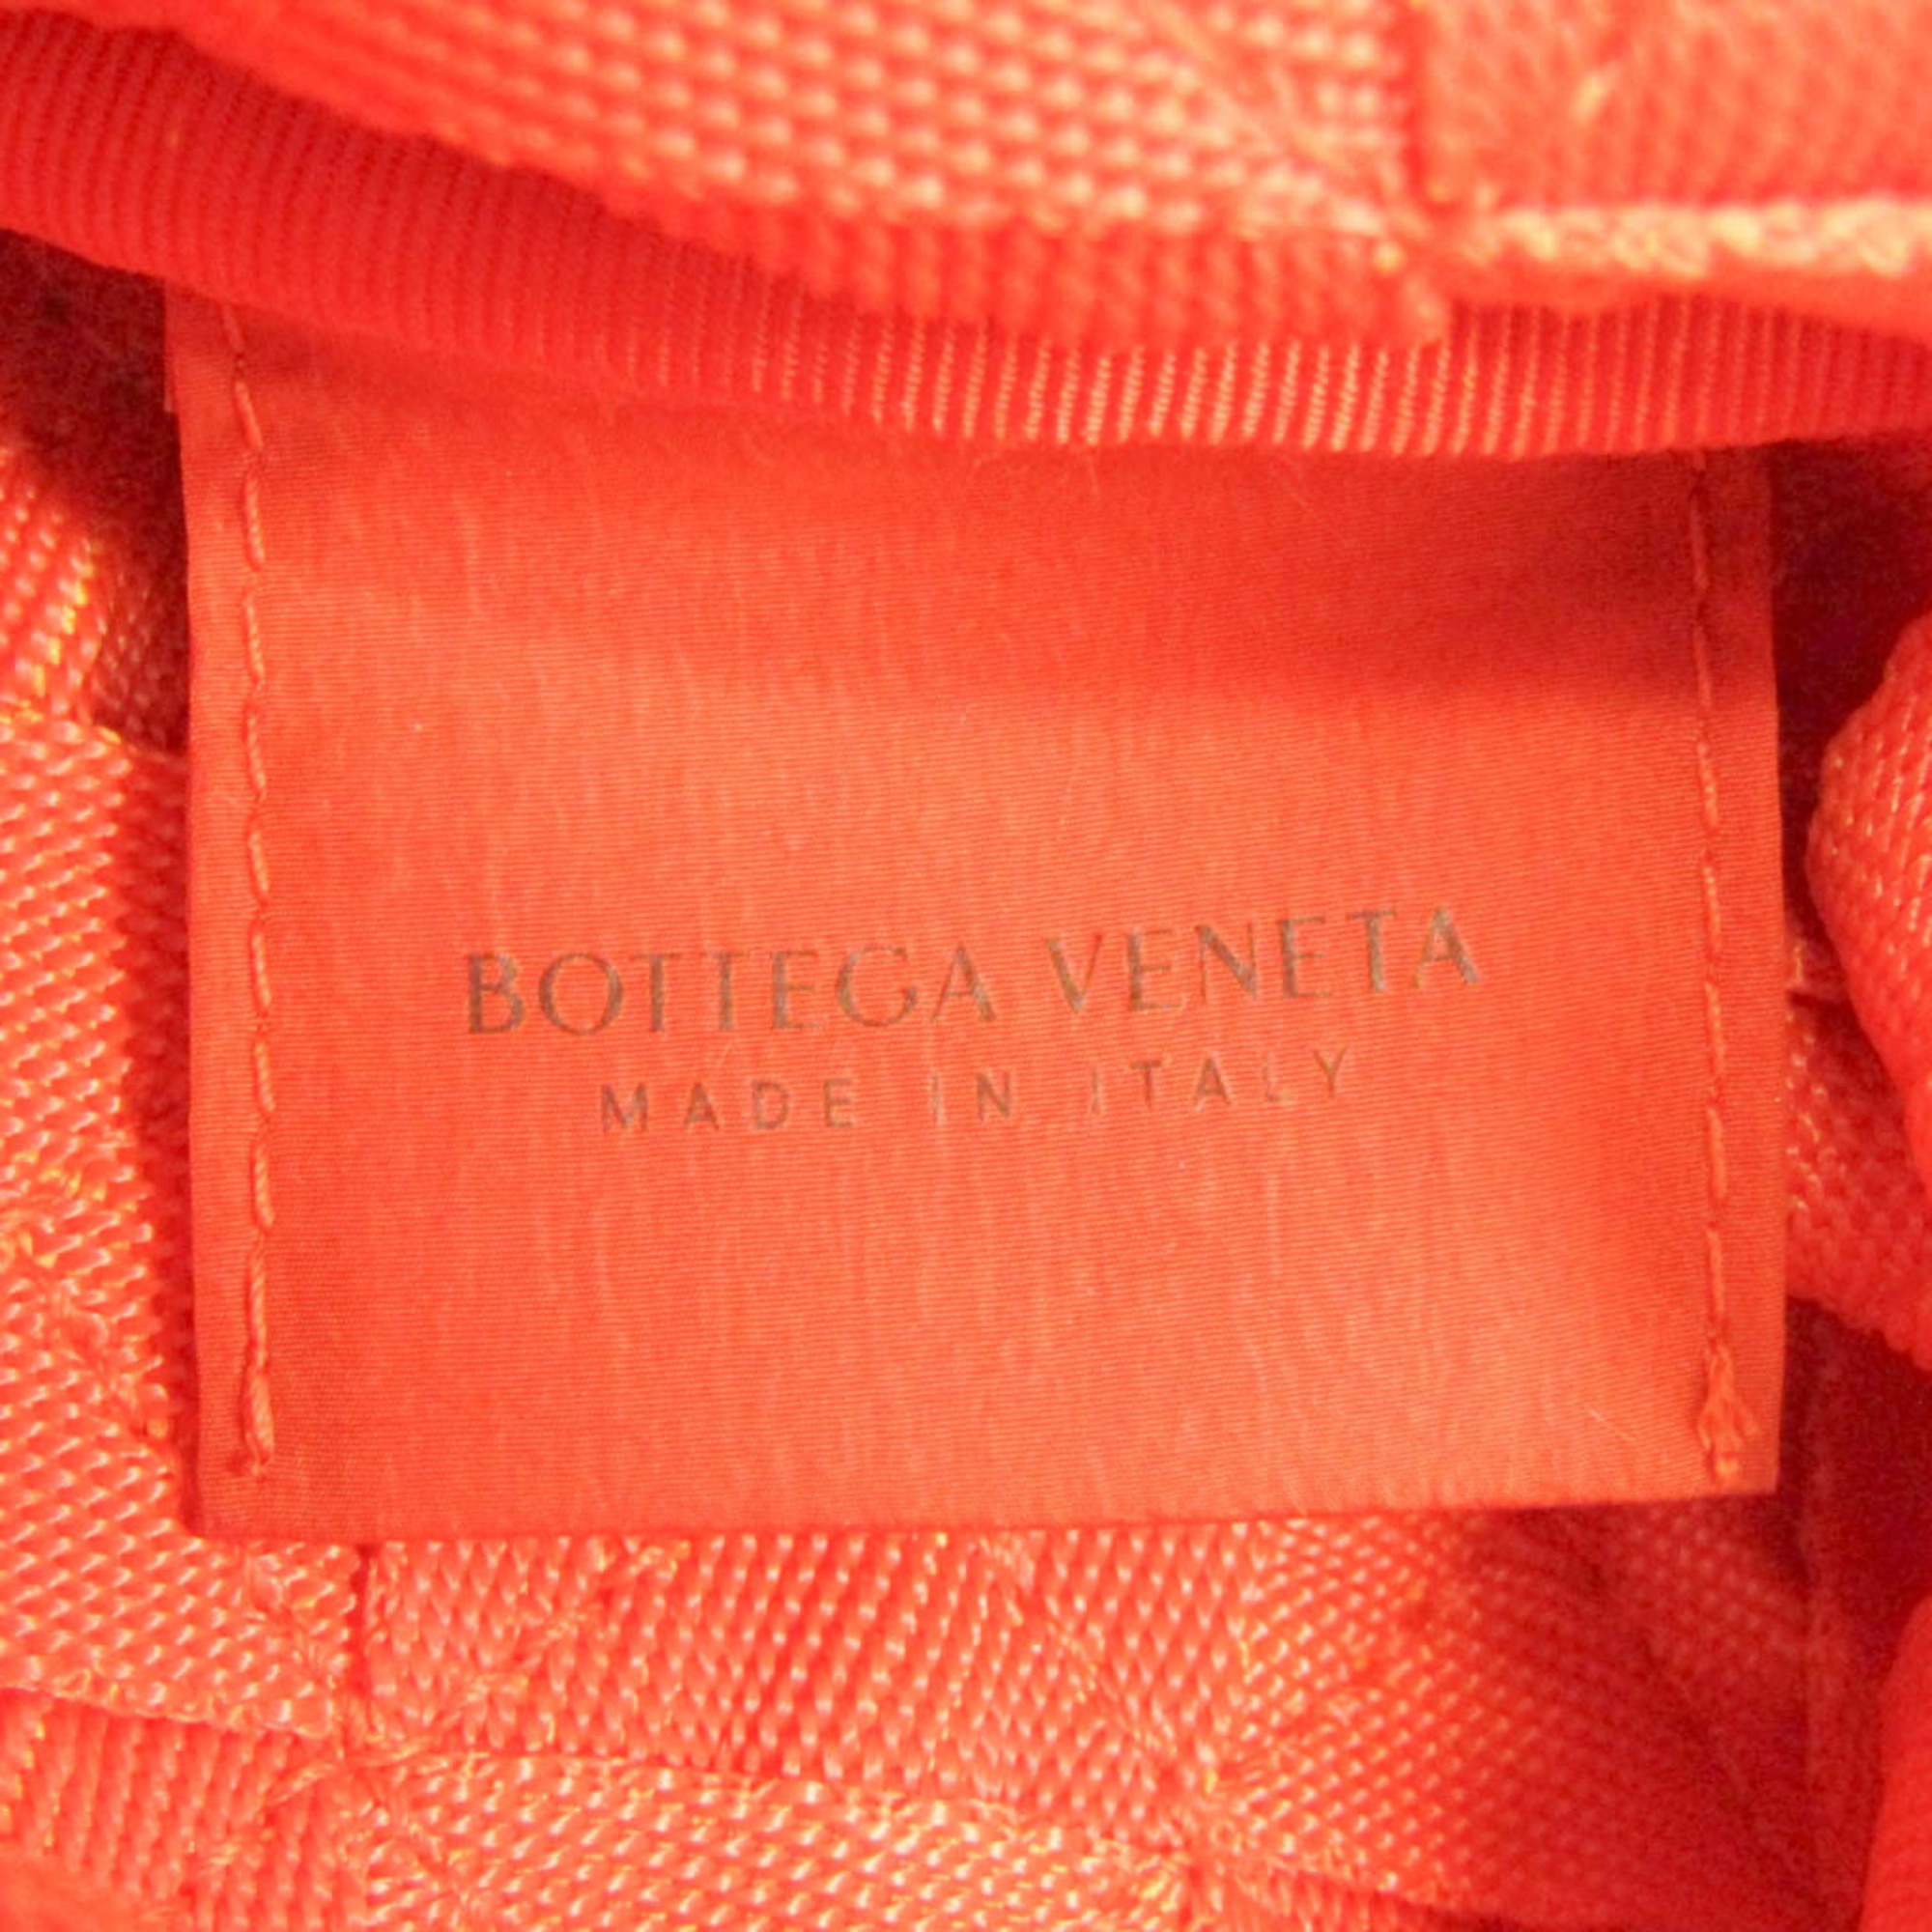 ボッテガ・ヴェネタ(Bottega Veneta) ライト ウェビング 667060 メンズ,レディース ポリプロピレン ドキュメントケース,ポーチ オレンジ